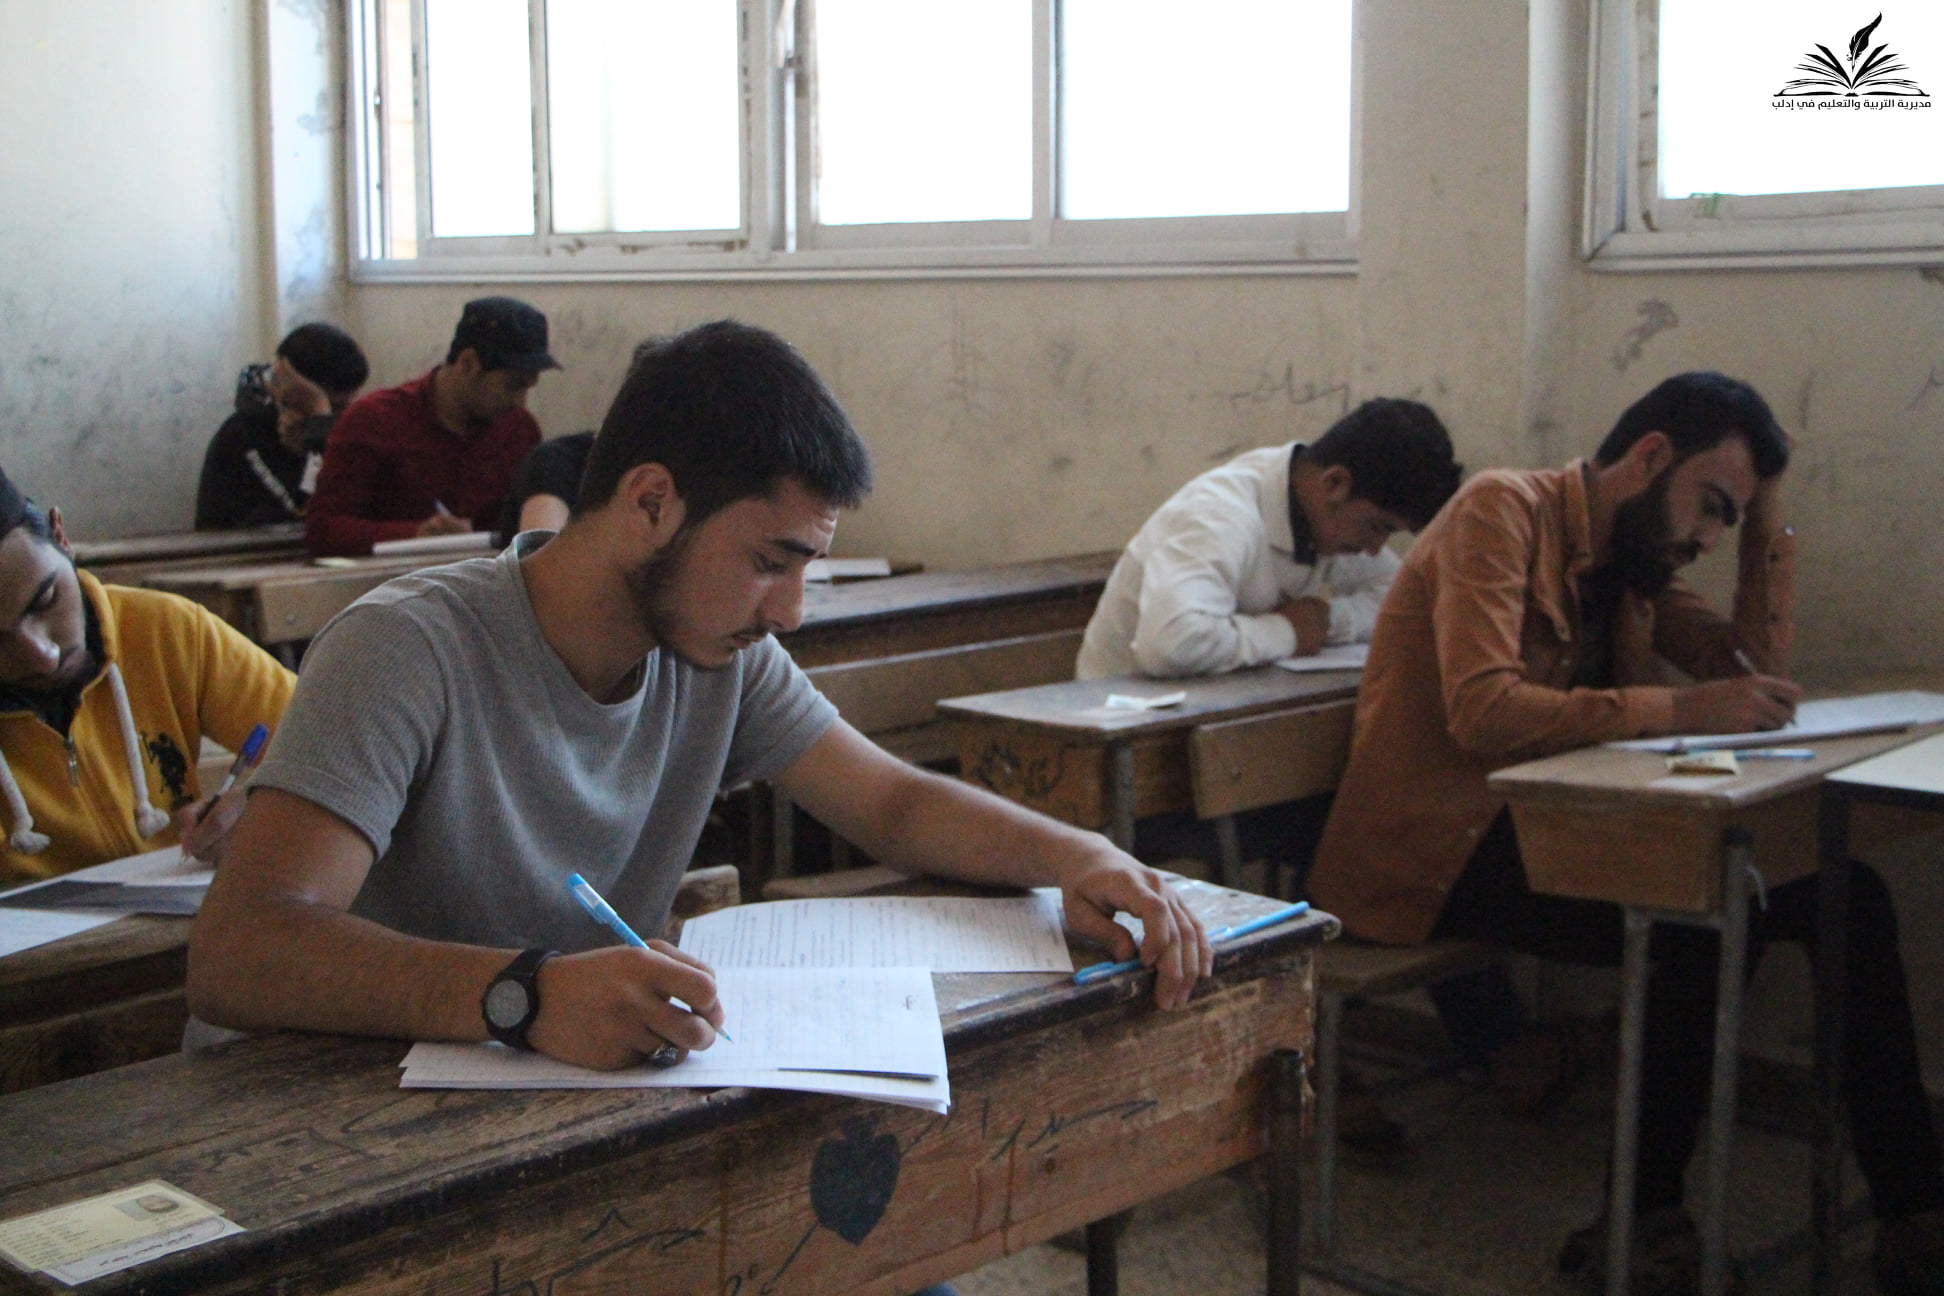 علقت وزارة التربية والتعليم في الحكومة السورية المؤقتة على أسئلة امتحان الرياضيات للشهادة الثانوية.